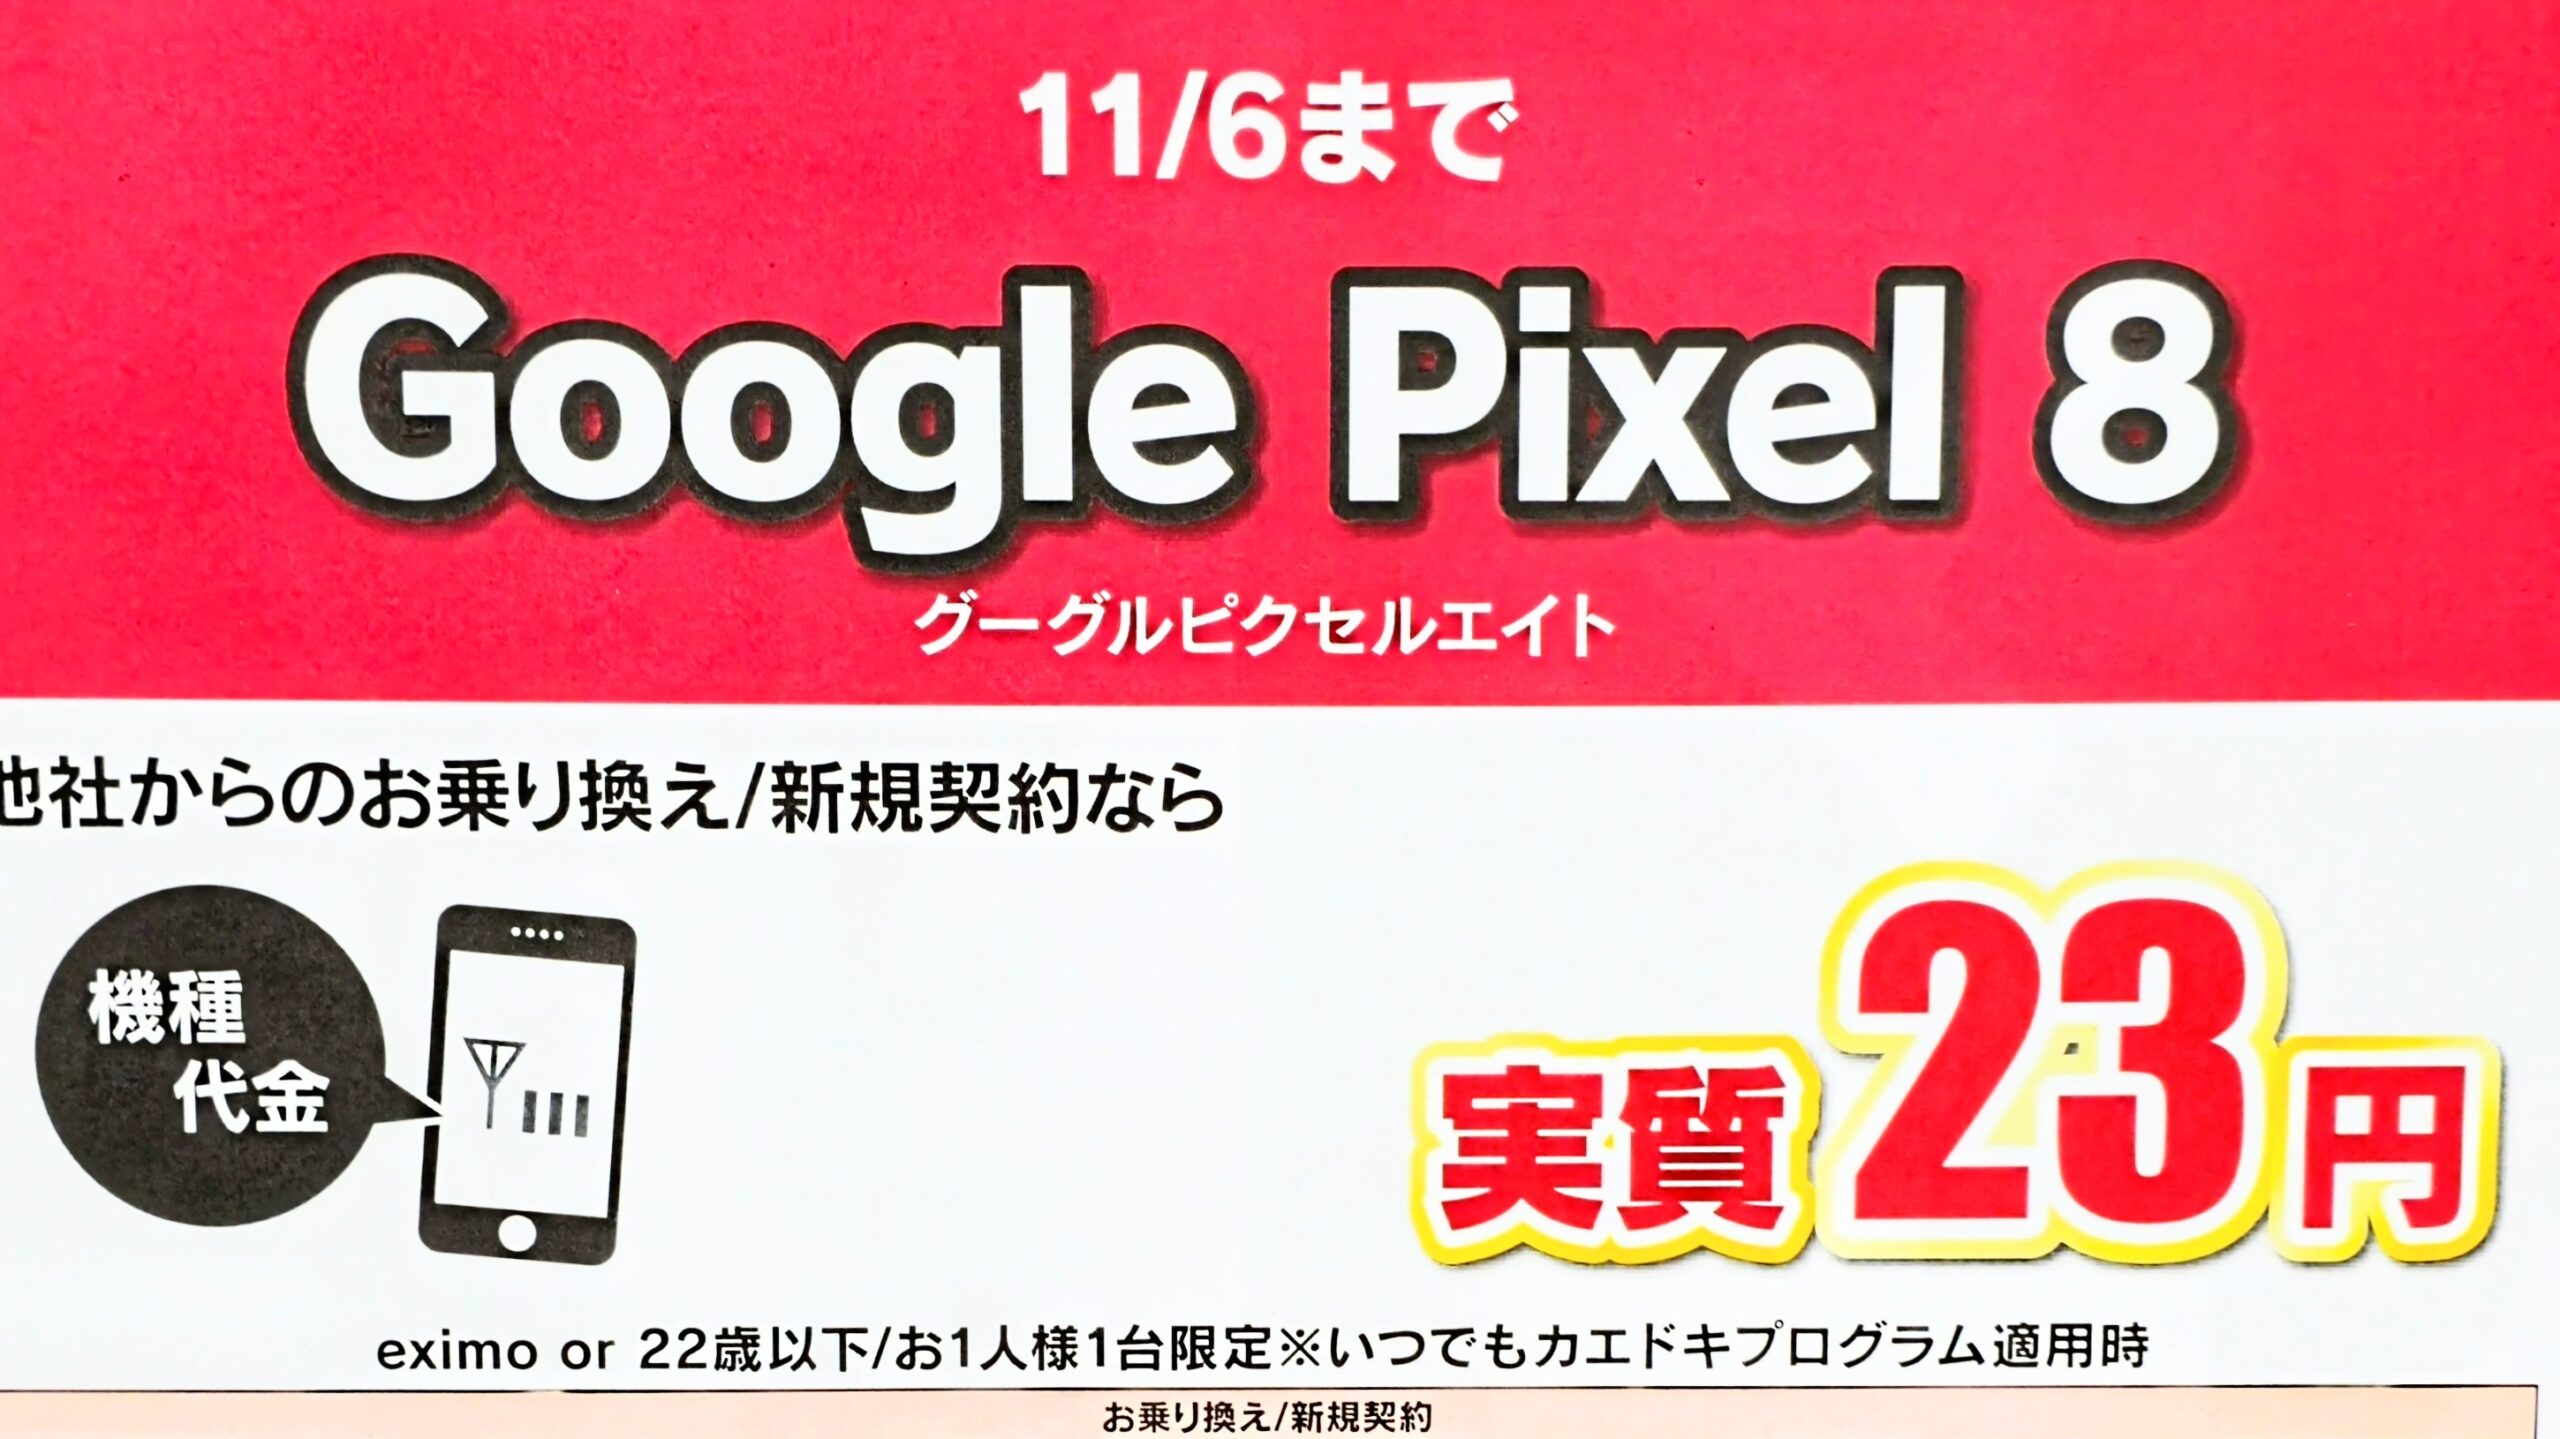 Google Pixel 8 実質23円